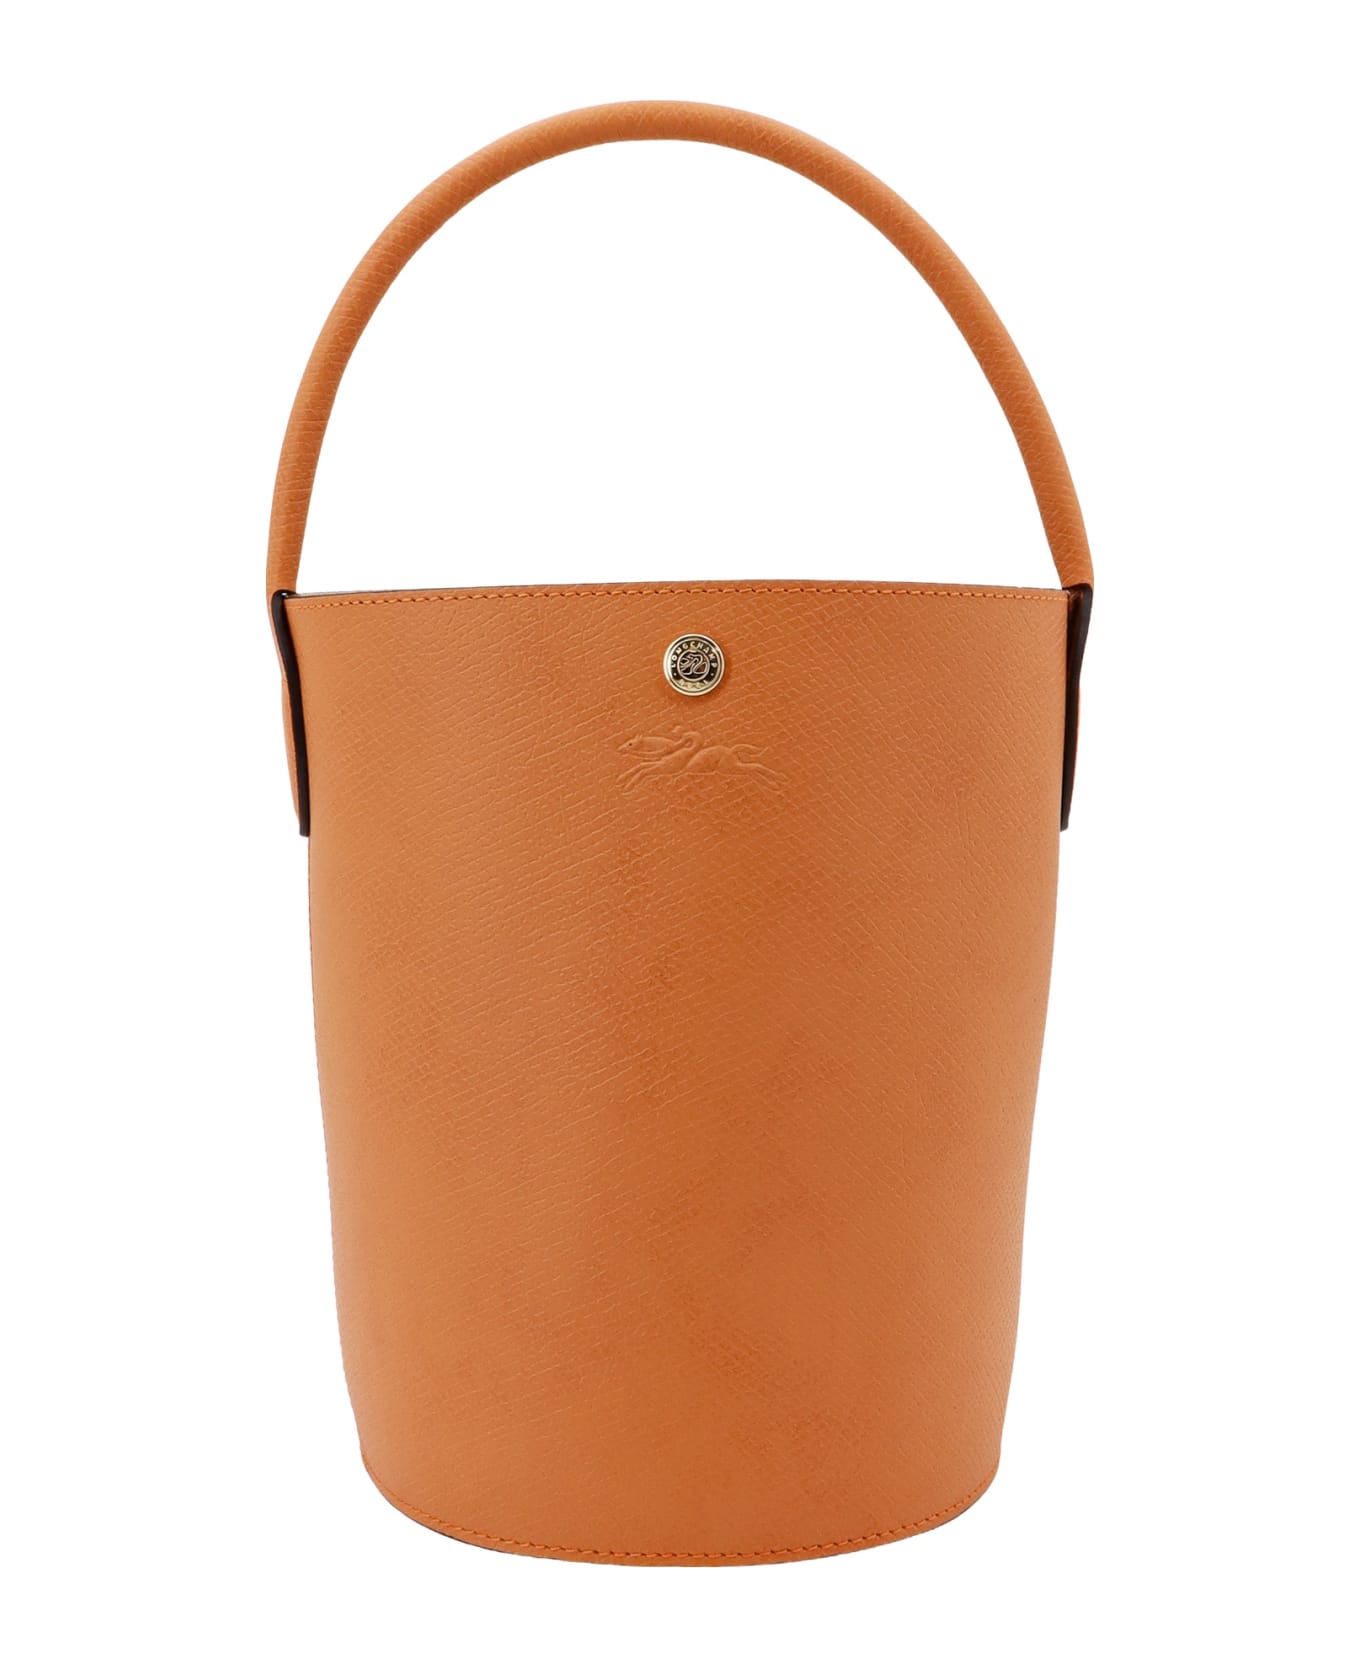 Longchamp Re Bucket Bag - Ocher